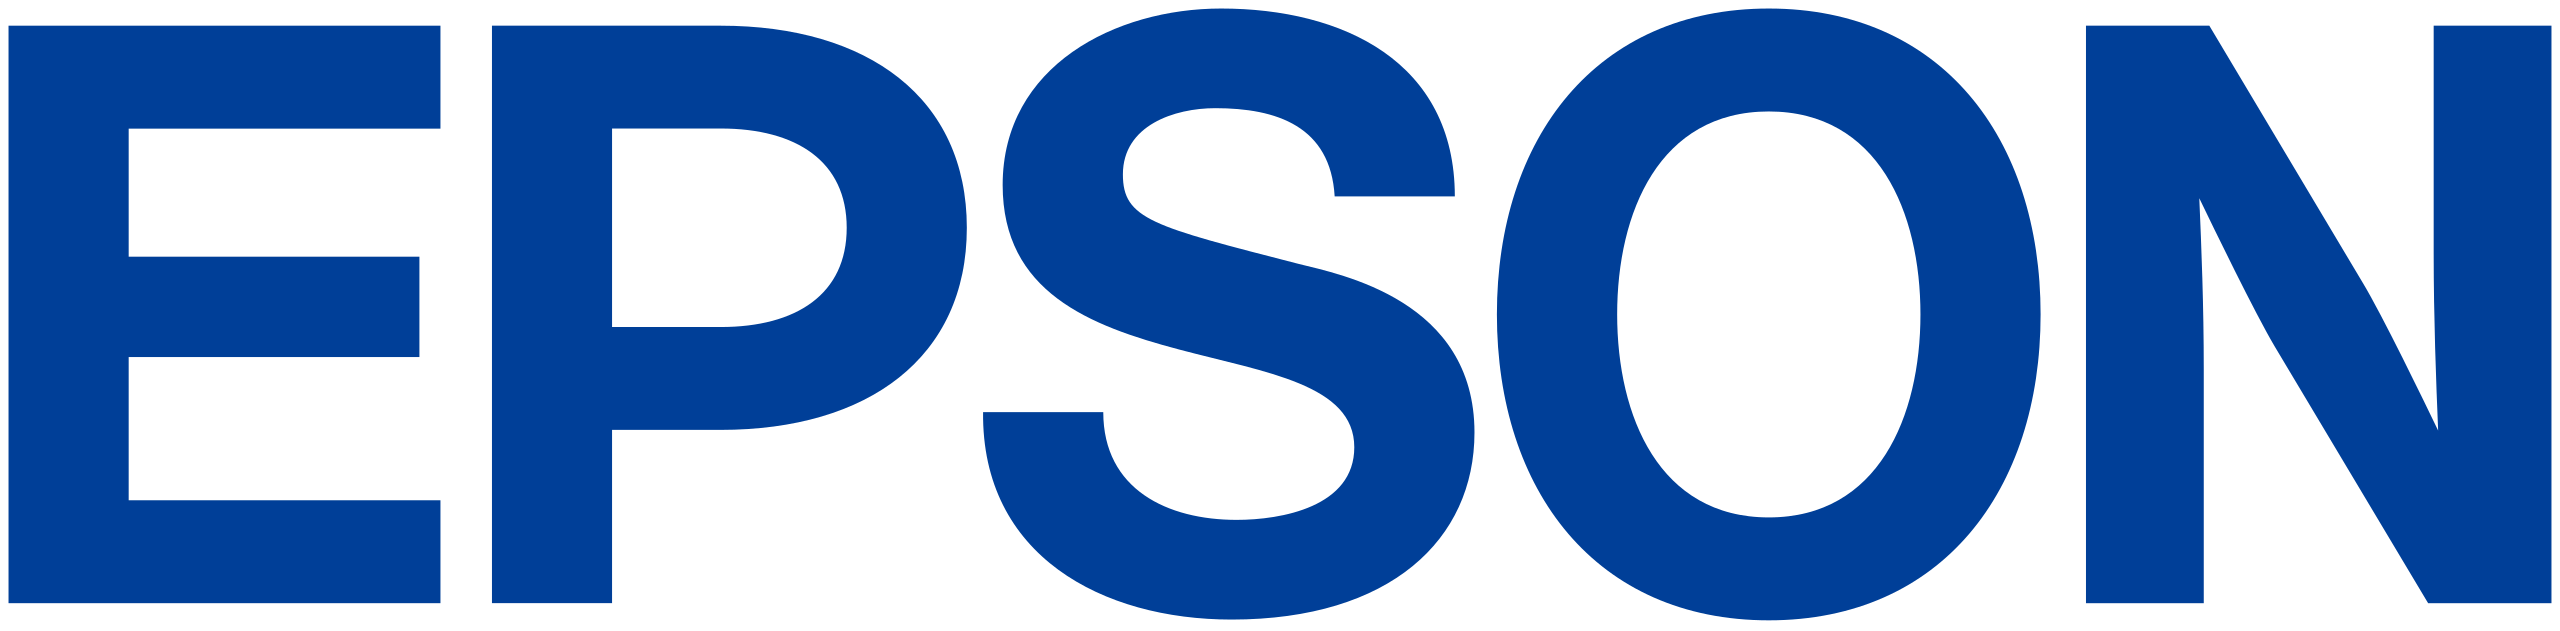 Epson_Logo